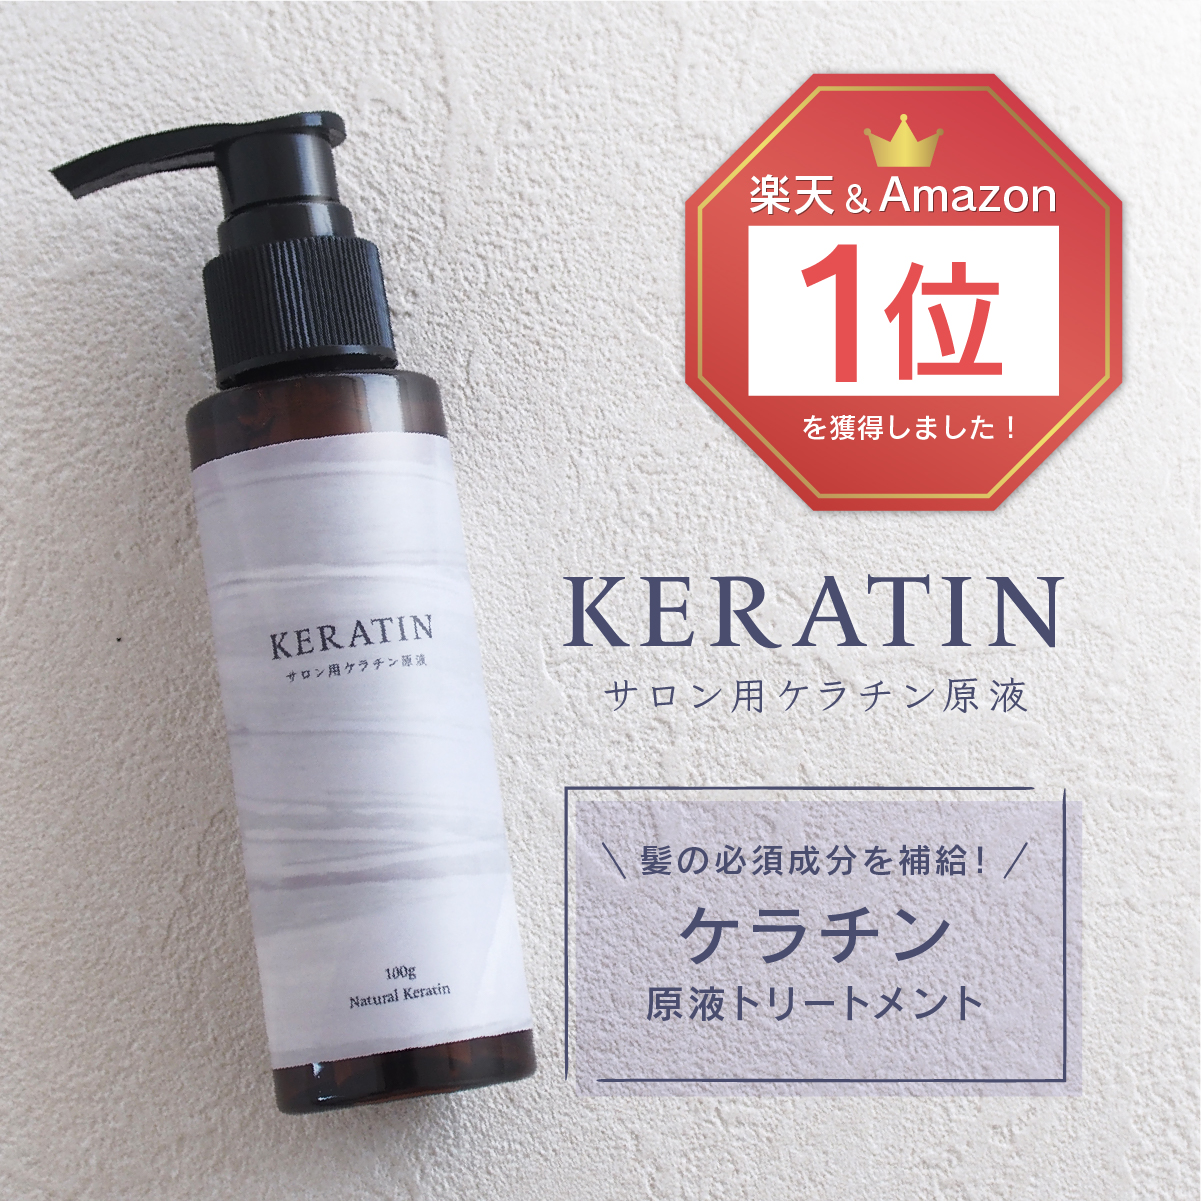 熱い販売 サロン用ケラチン原液 ナチュラルケラチン Natural Keratin 100g 業務用ケラチントリートメント ツヤ 髪質改善 